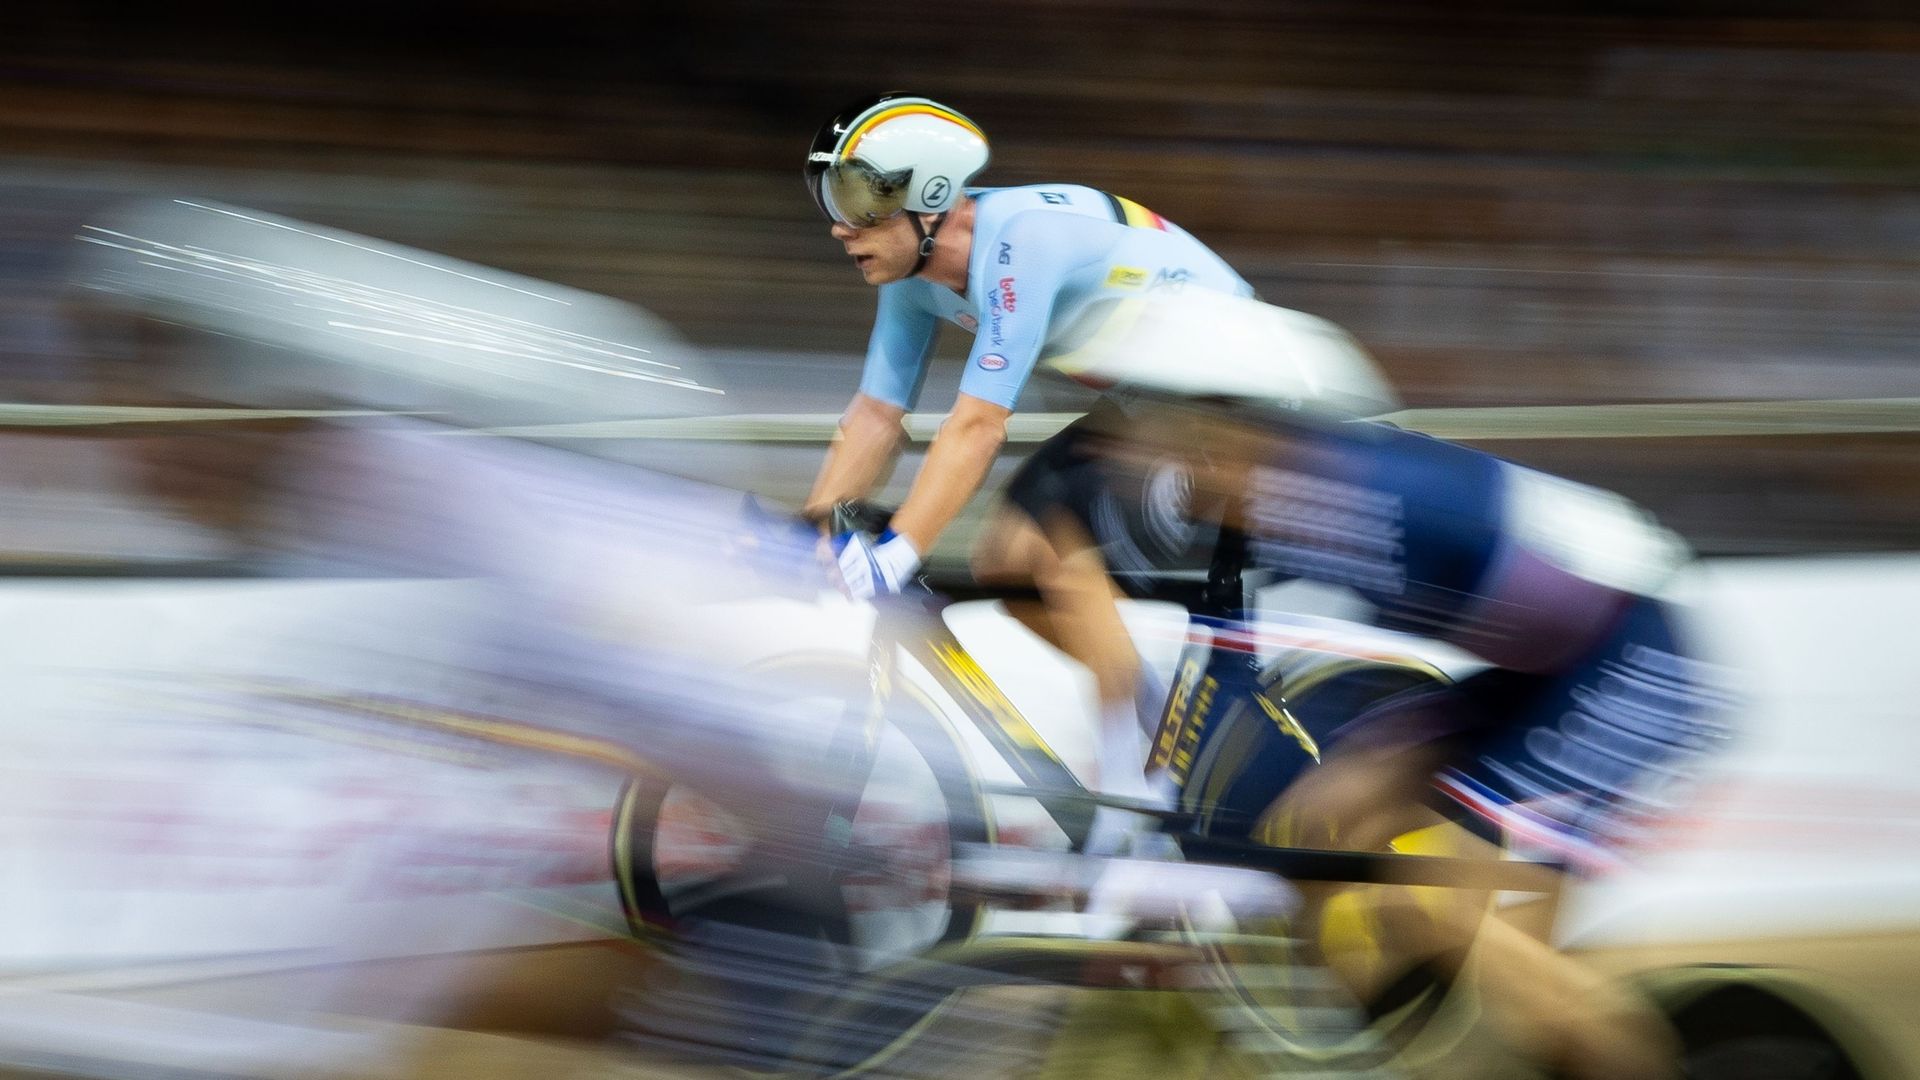 Aligné sur la course à élimination des Mondiaux de cyclisme sur piste, Jules Hesters a failli rapporter une cinquième médaille à la Belgique. Le coureur de 23 ans a finalement pris la quatrième place.